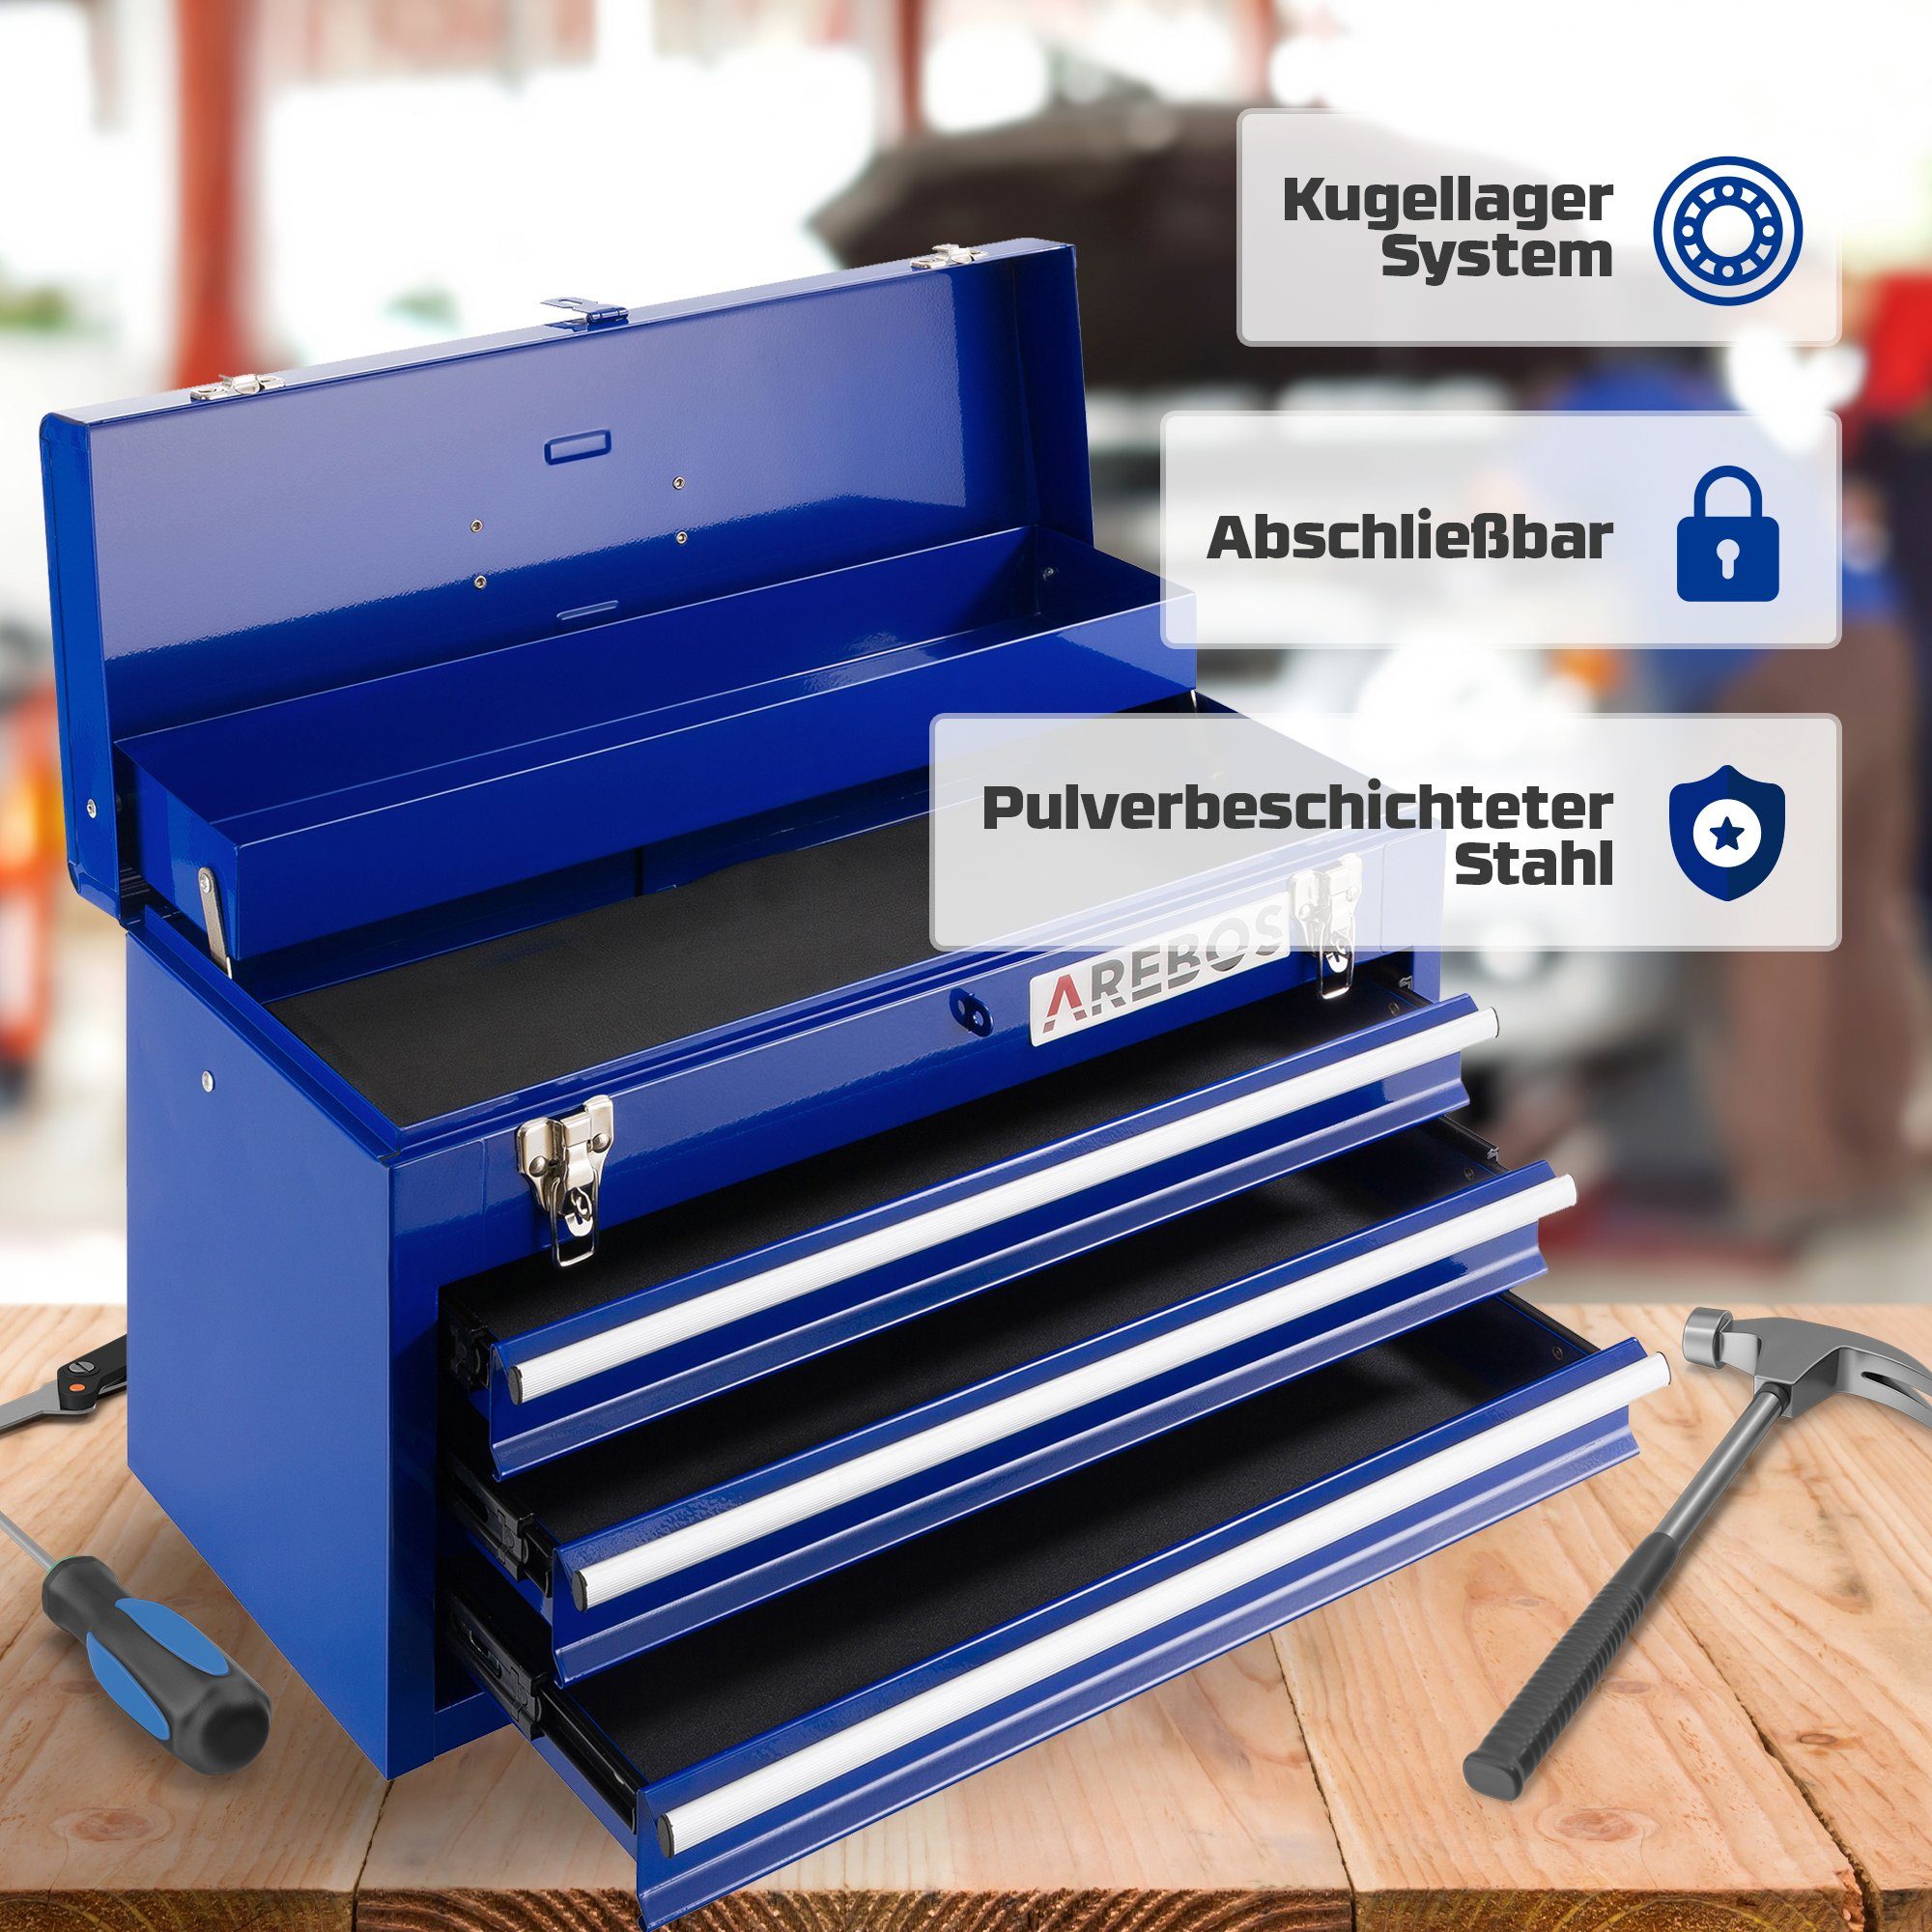 Arebos Werkzeugkoffer 3 Schubladen & blau mit 2 Ablagefächern